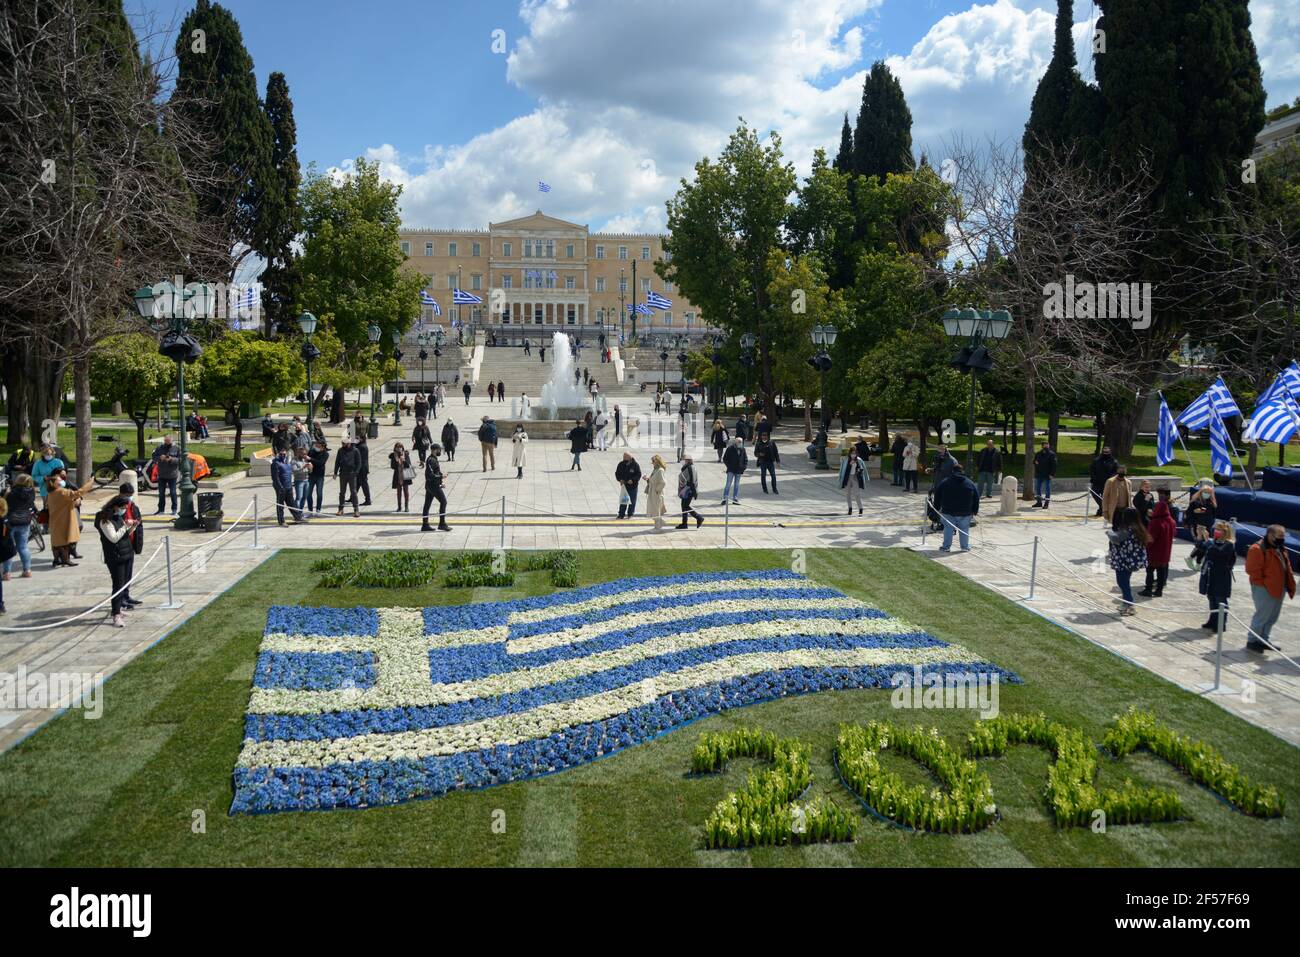 Drapeaux grecs placés sur la place Syntagma avant les célébrations du Bicentenaire de l'indépendance. Athènes, Grèce, 24 mars 2021. Crédit: Dimitris Aspiotis Banque D'Images